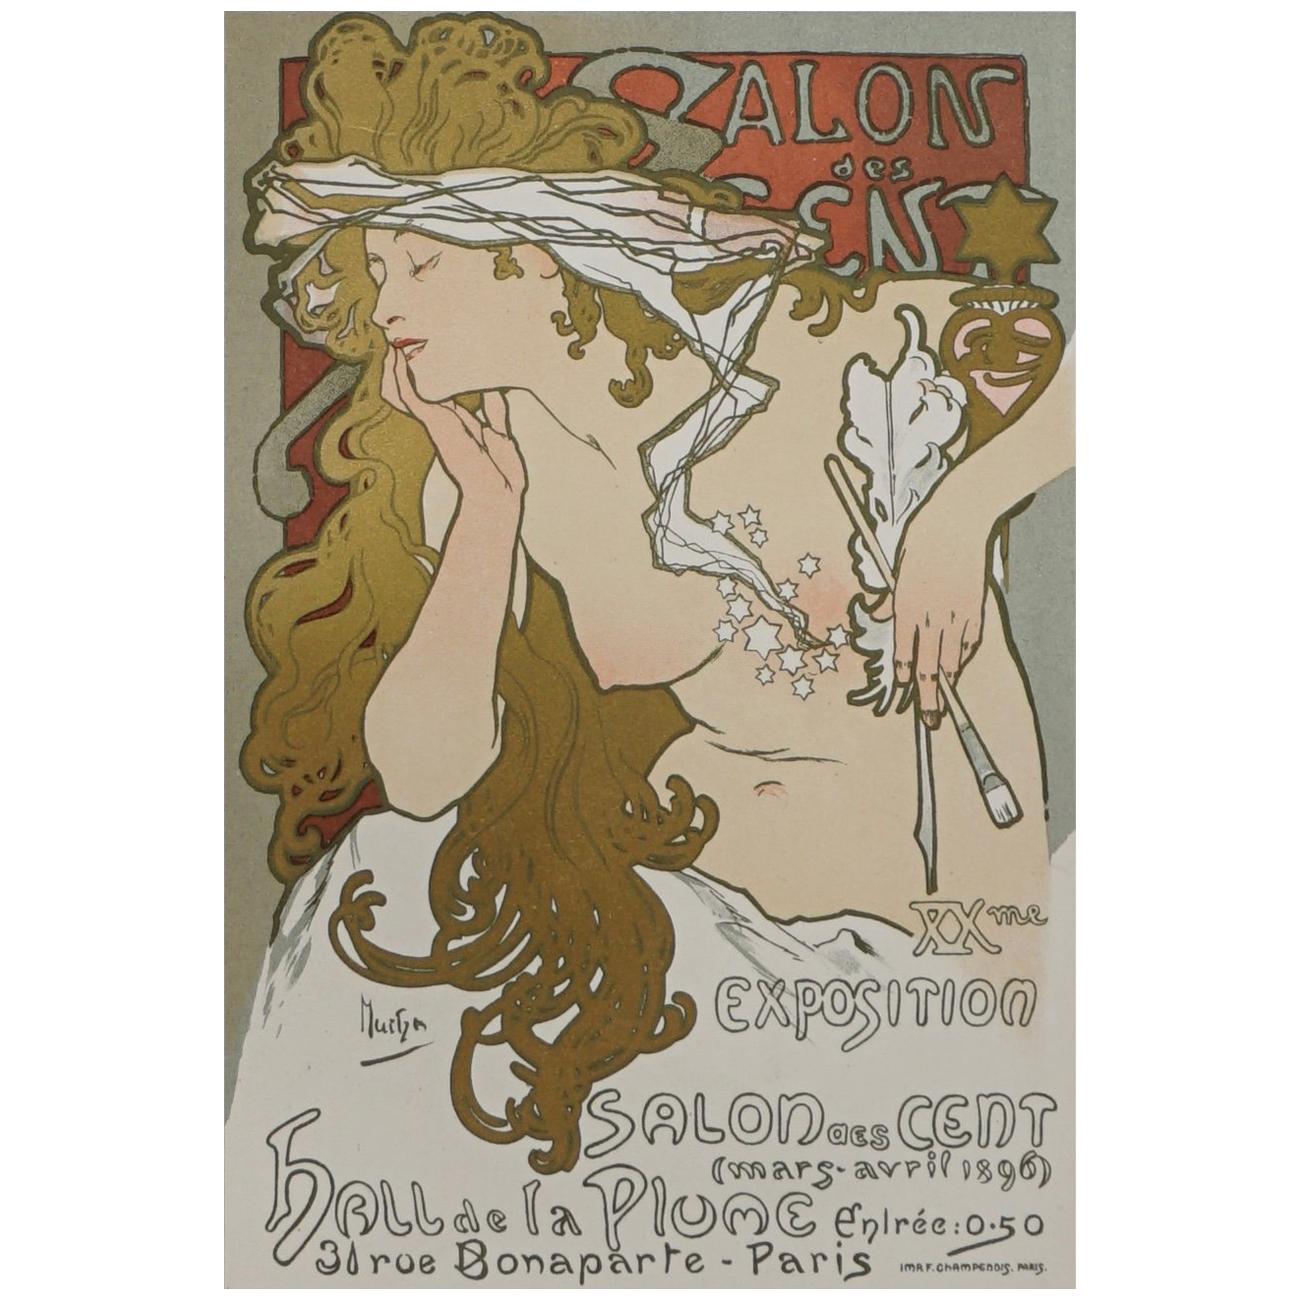 (after) Alphonse Mucha, "Salon Des Cent" from Das Moderne Plakat